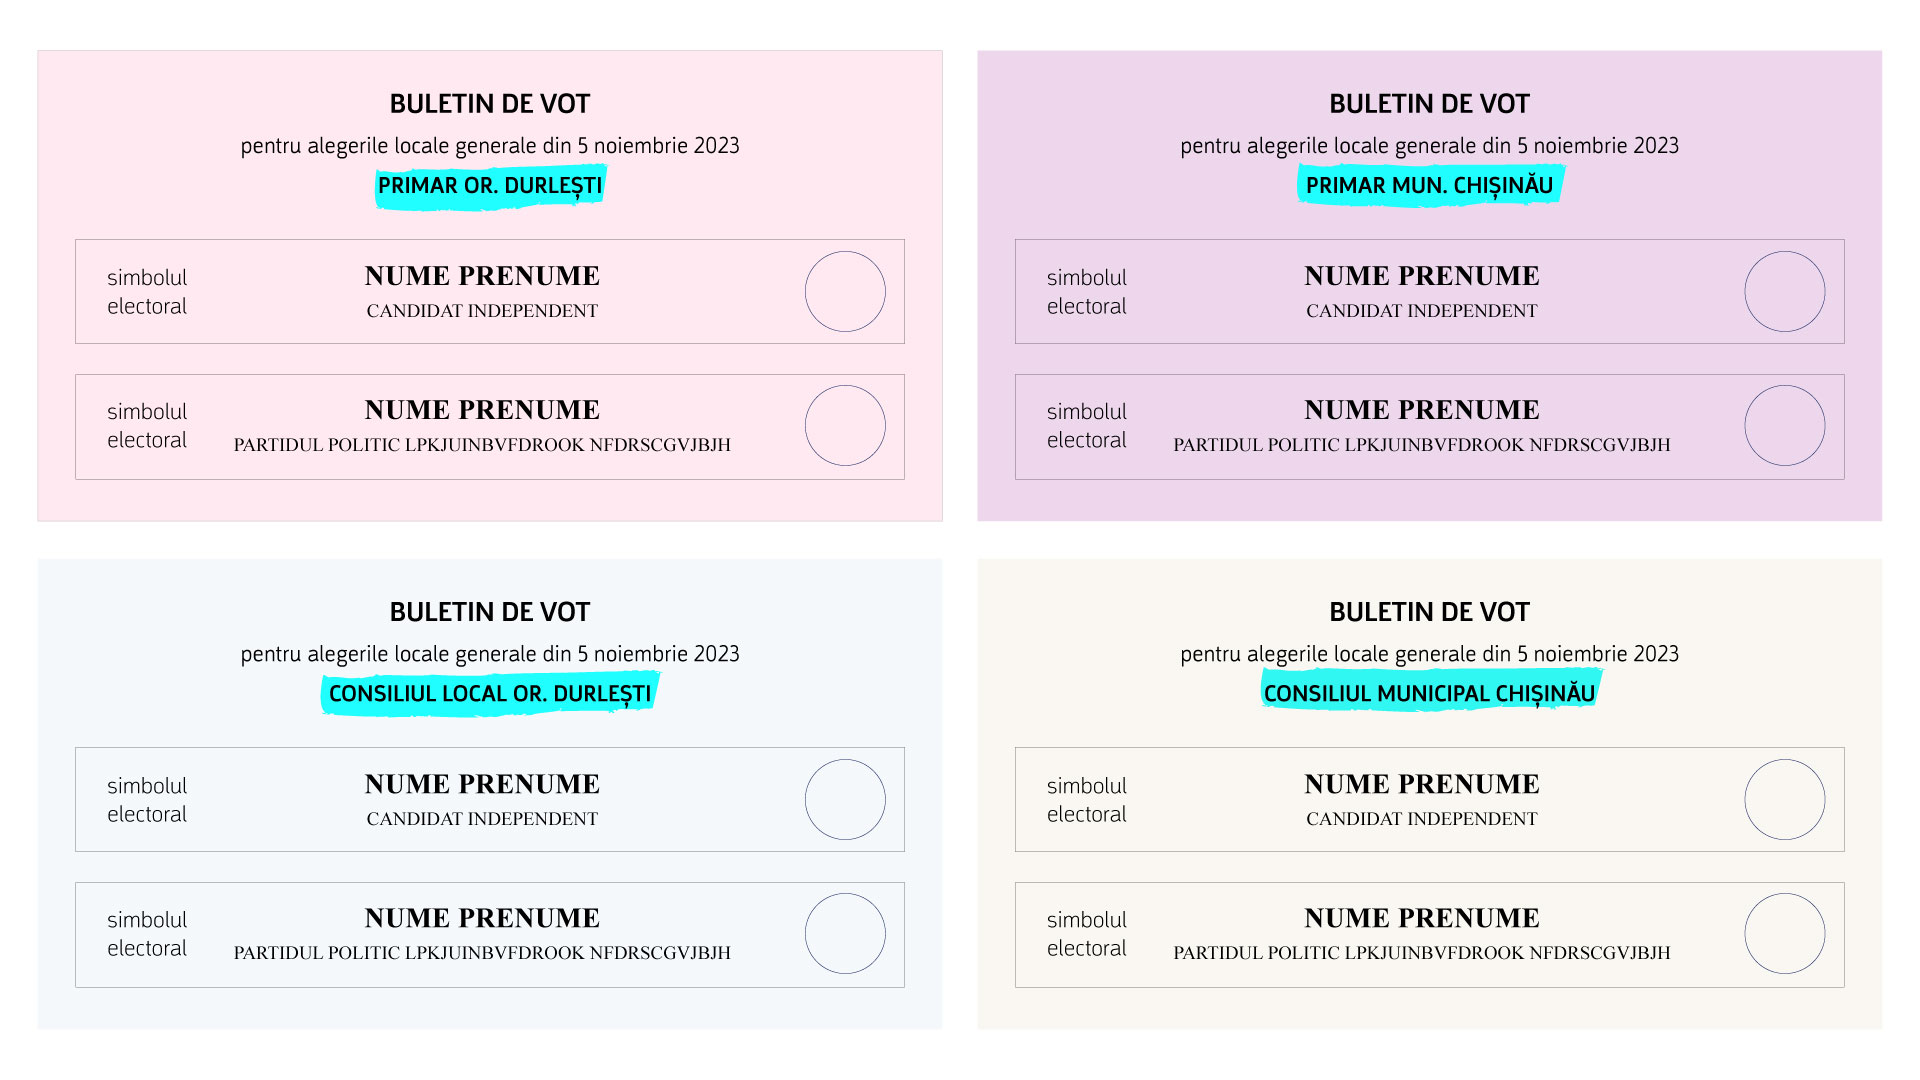 Ilustrație a buletinelor de vot pe care le vor primi locuitorii or. Durlești pe 5 noiembrie 2023: două pentru alegerea primarului și Consiliului local al or. Durlești și alte două pentru alegerea primarului și a Consiliului mun. Chișinău